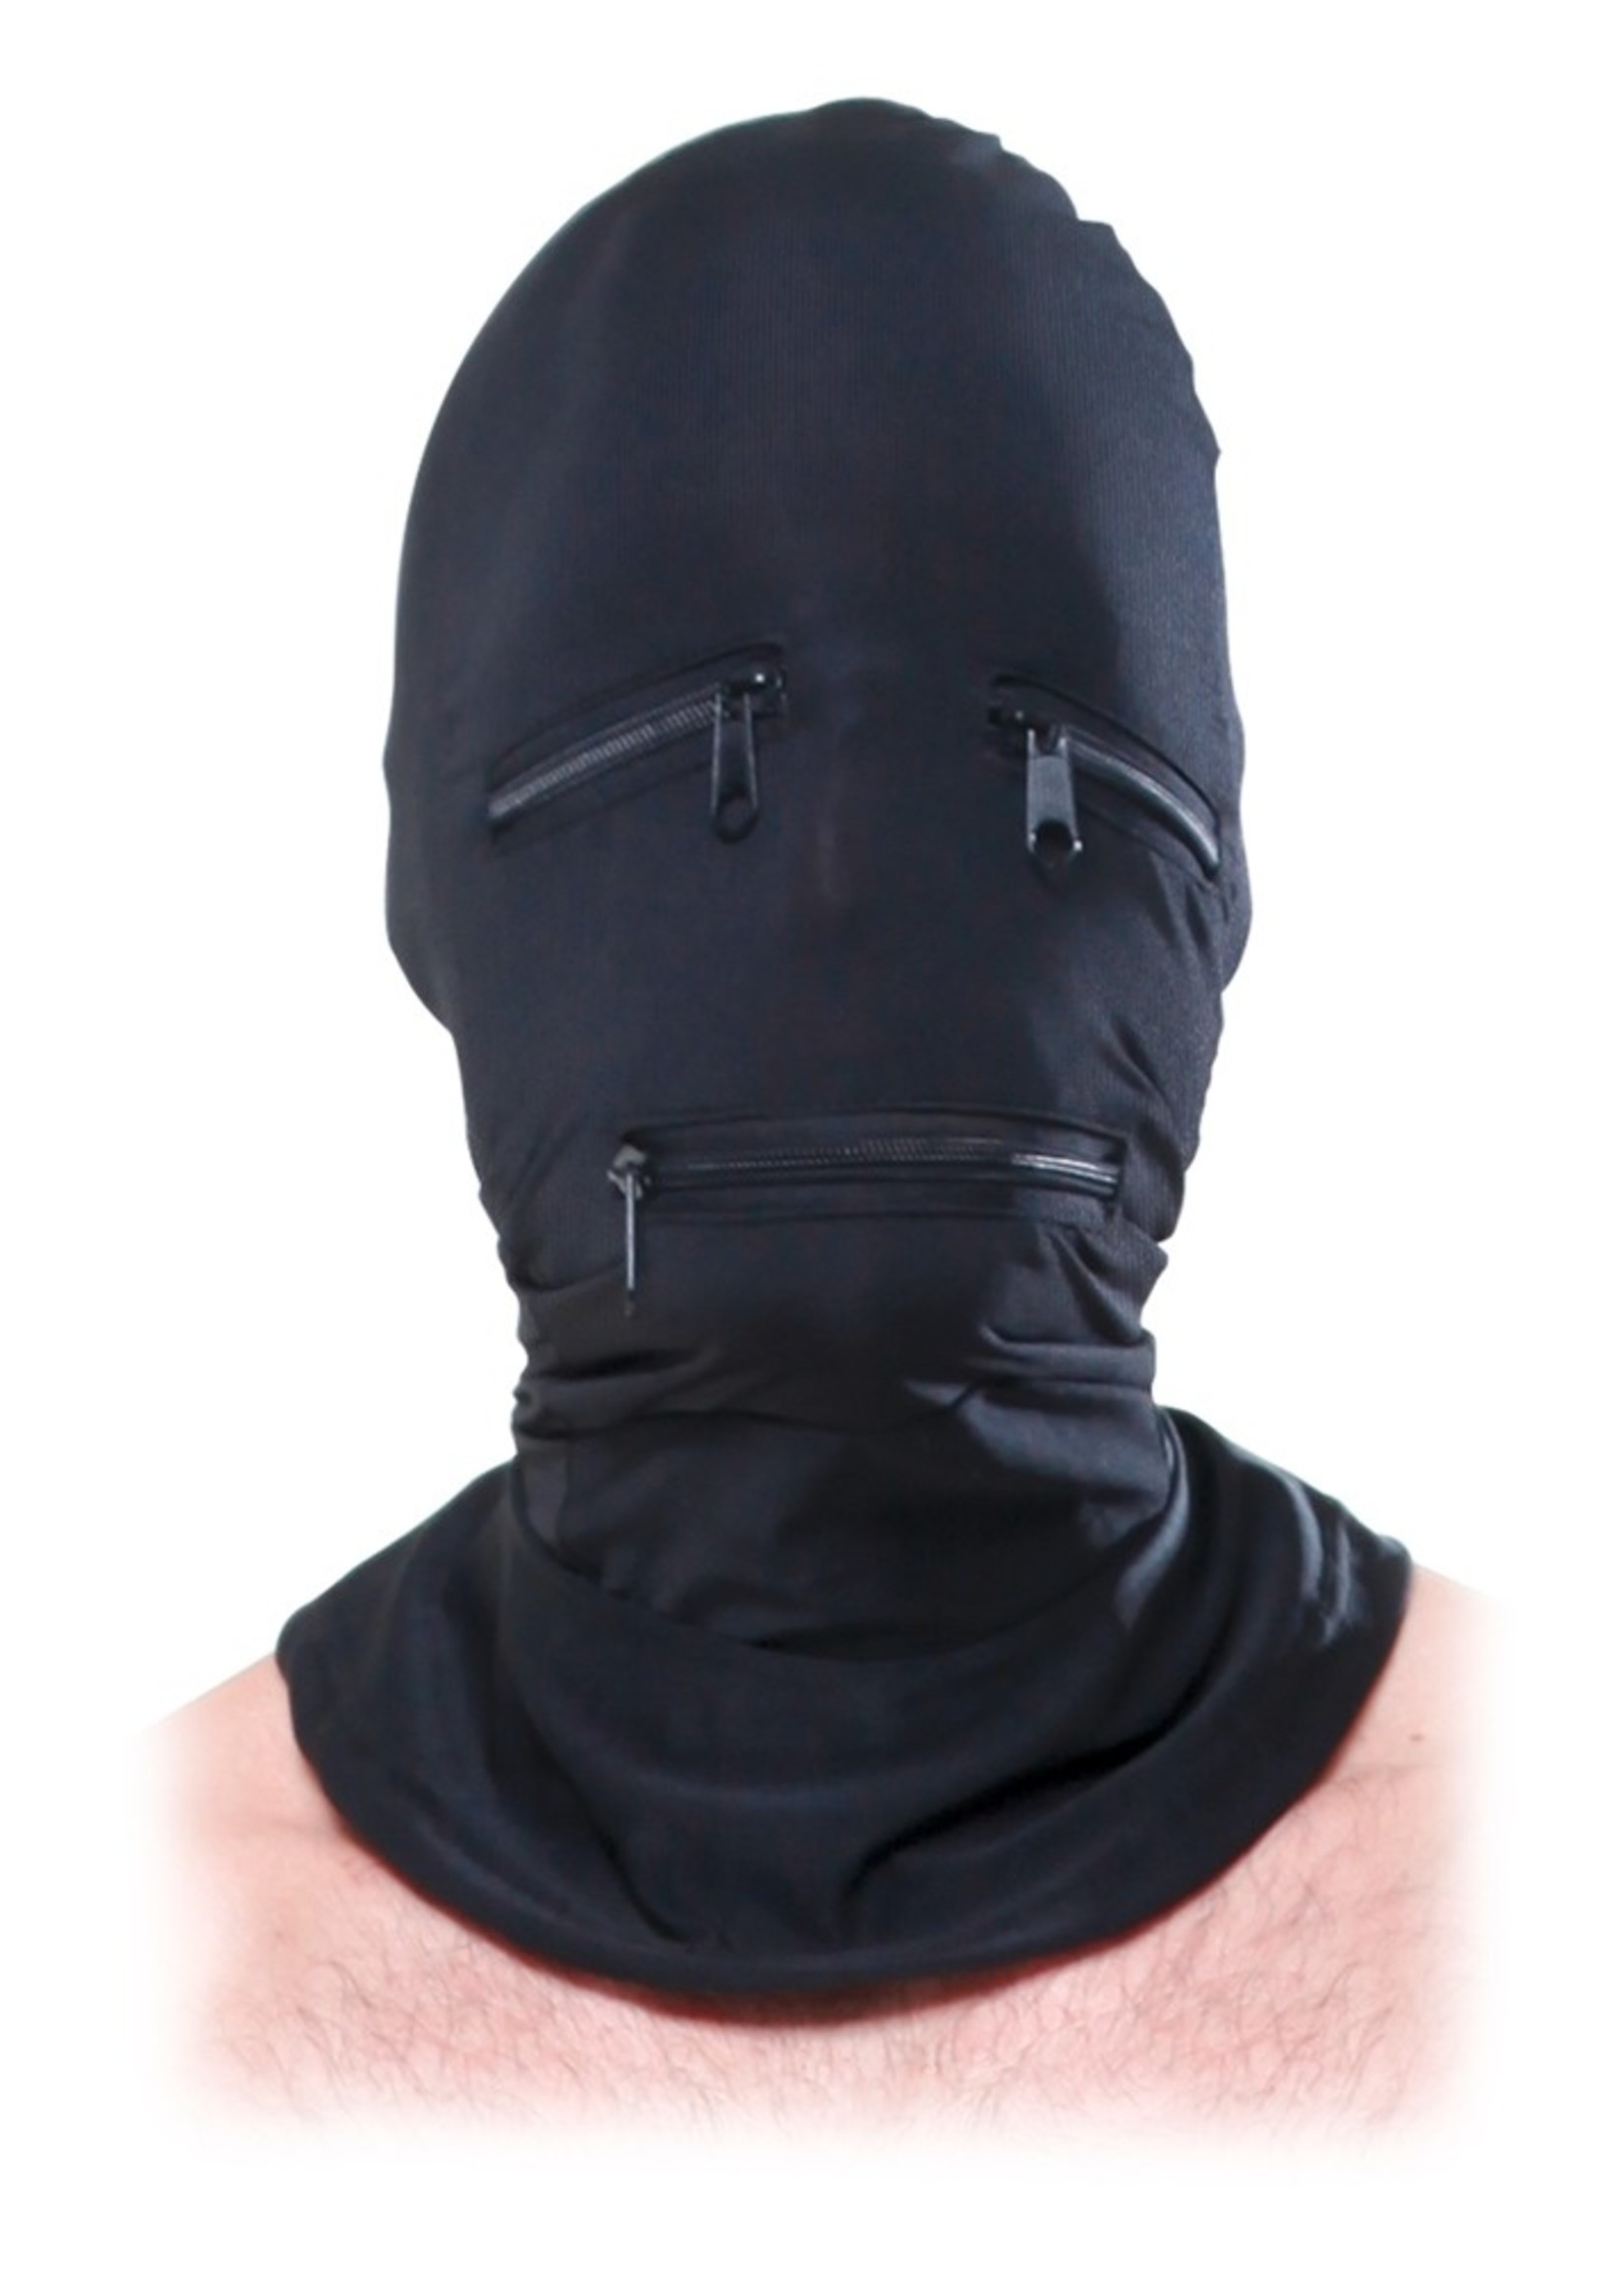 Pipedream Zipper face hood